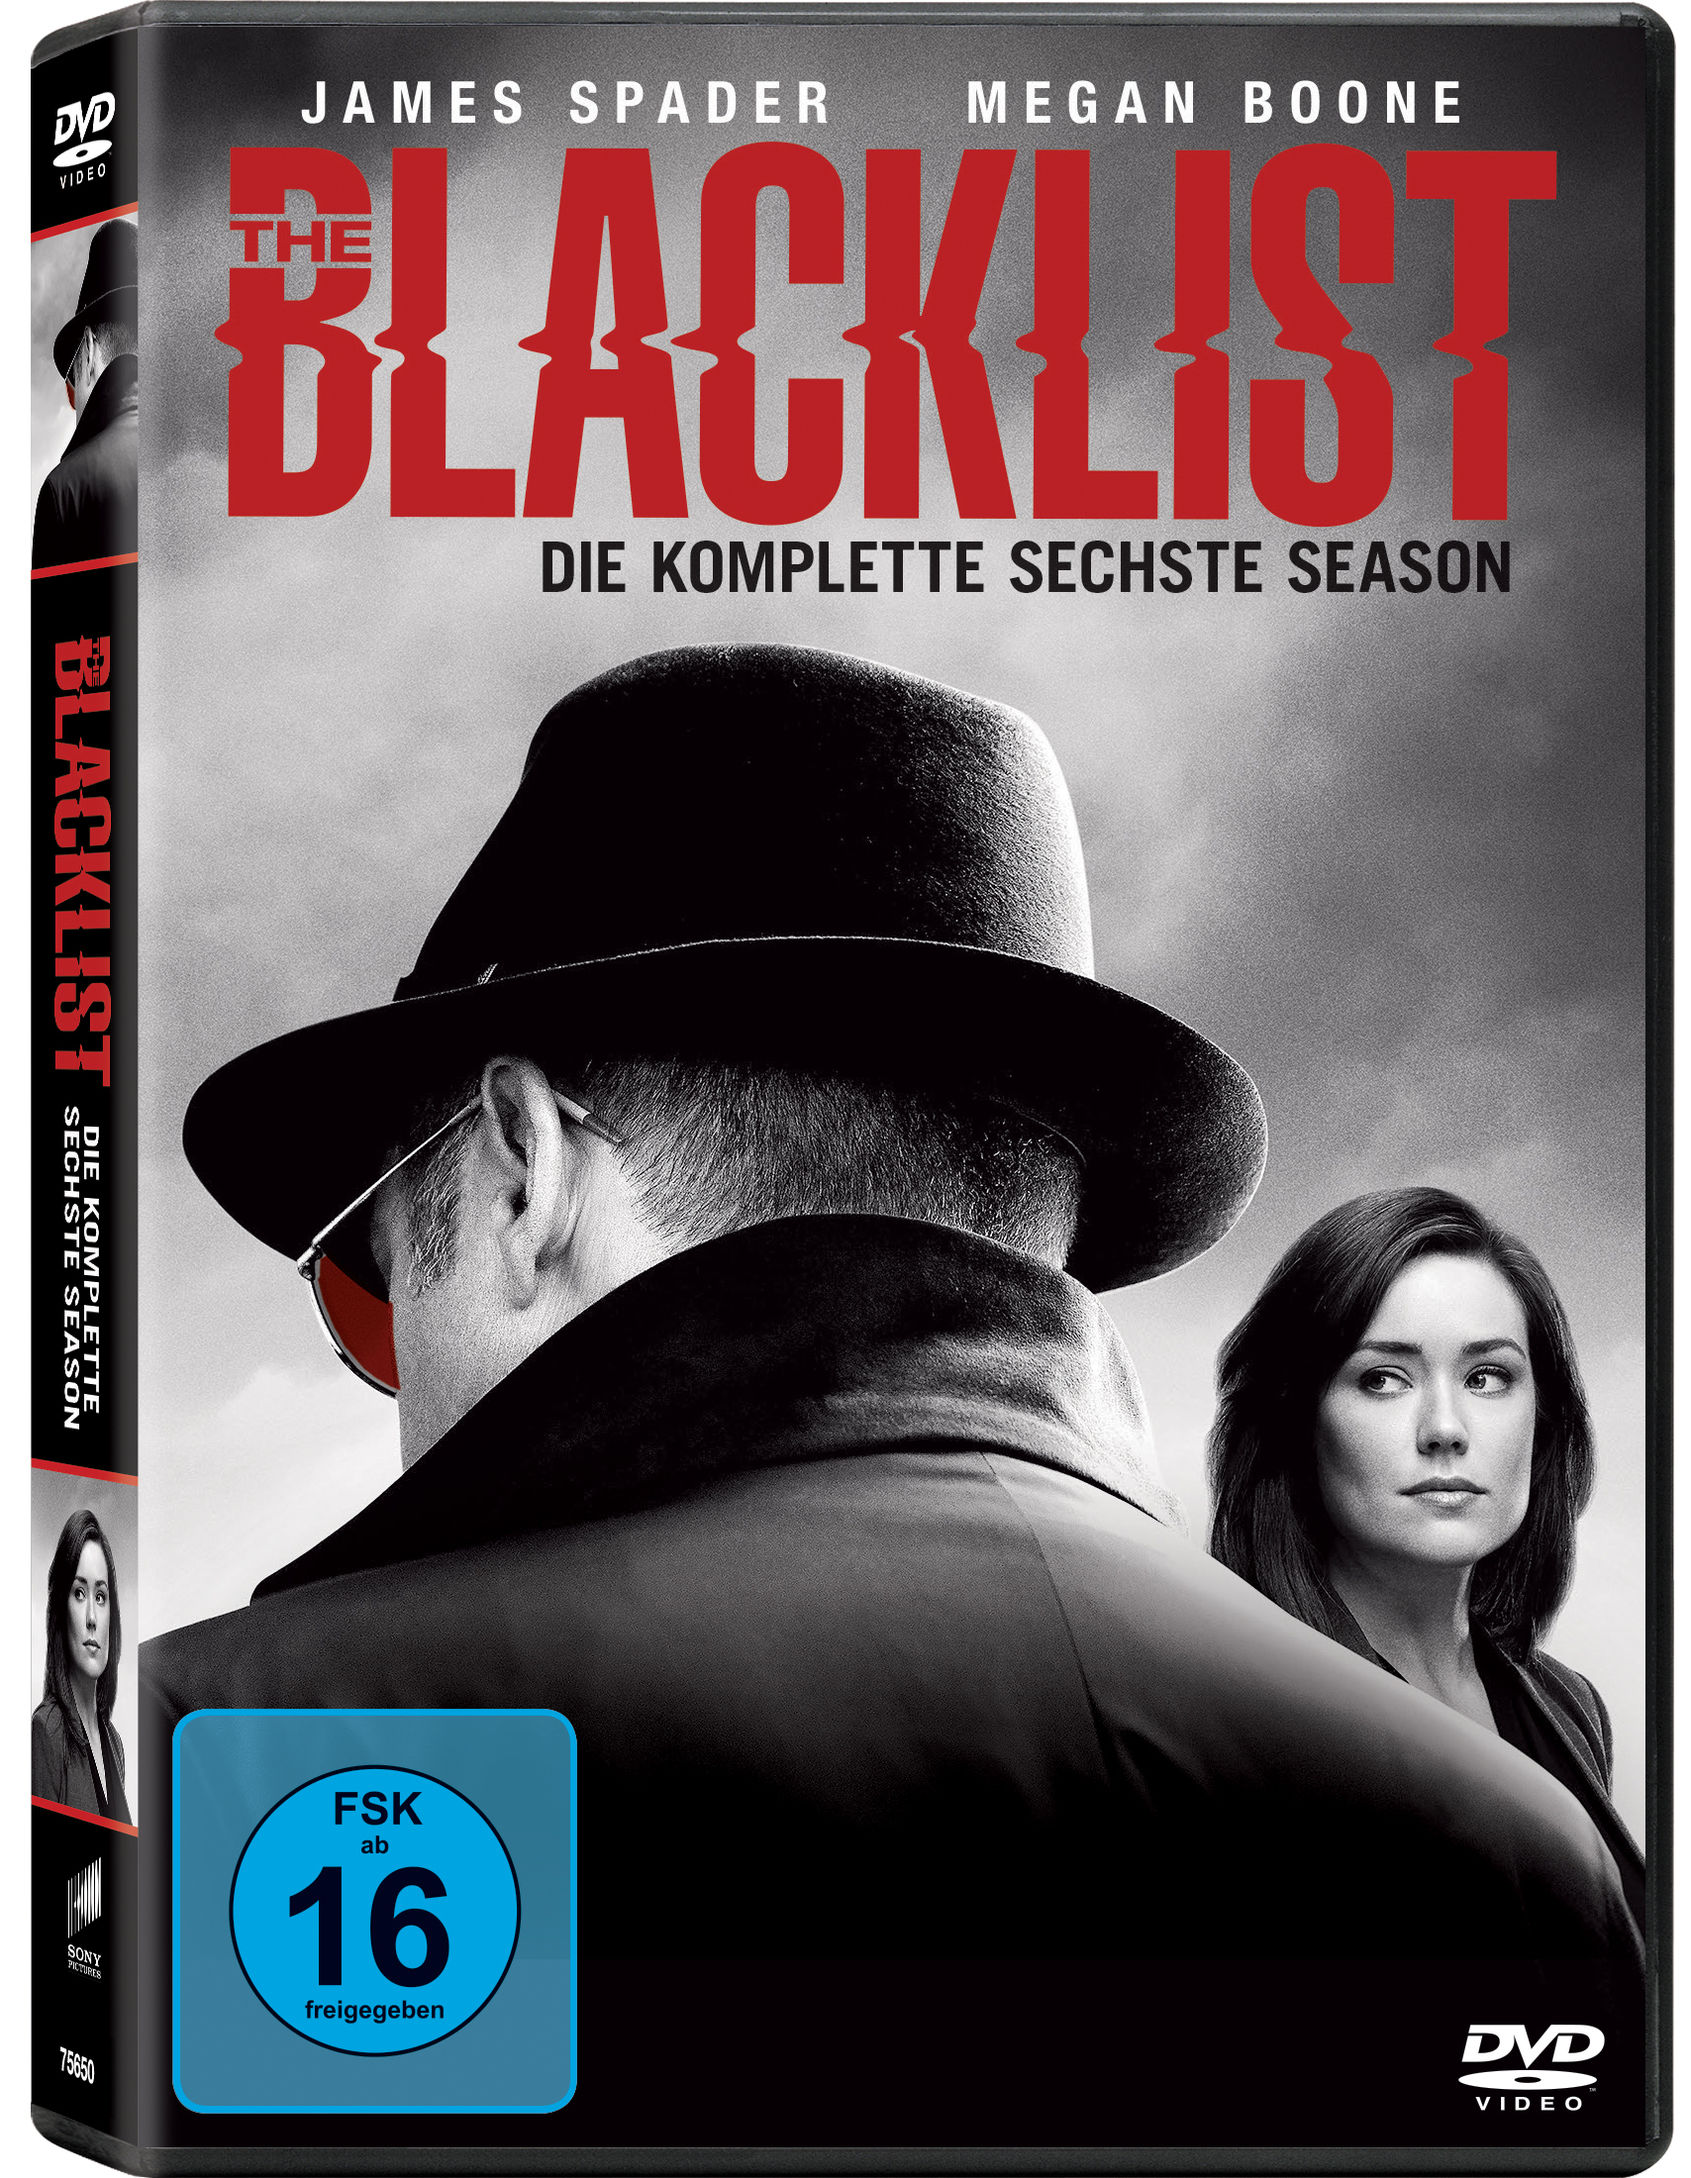 The Blacklist - Staffel 6 DVD bei Weltbild.de bestellen